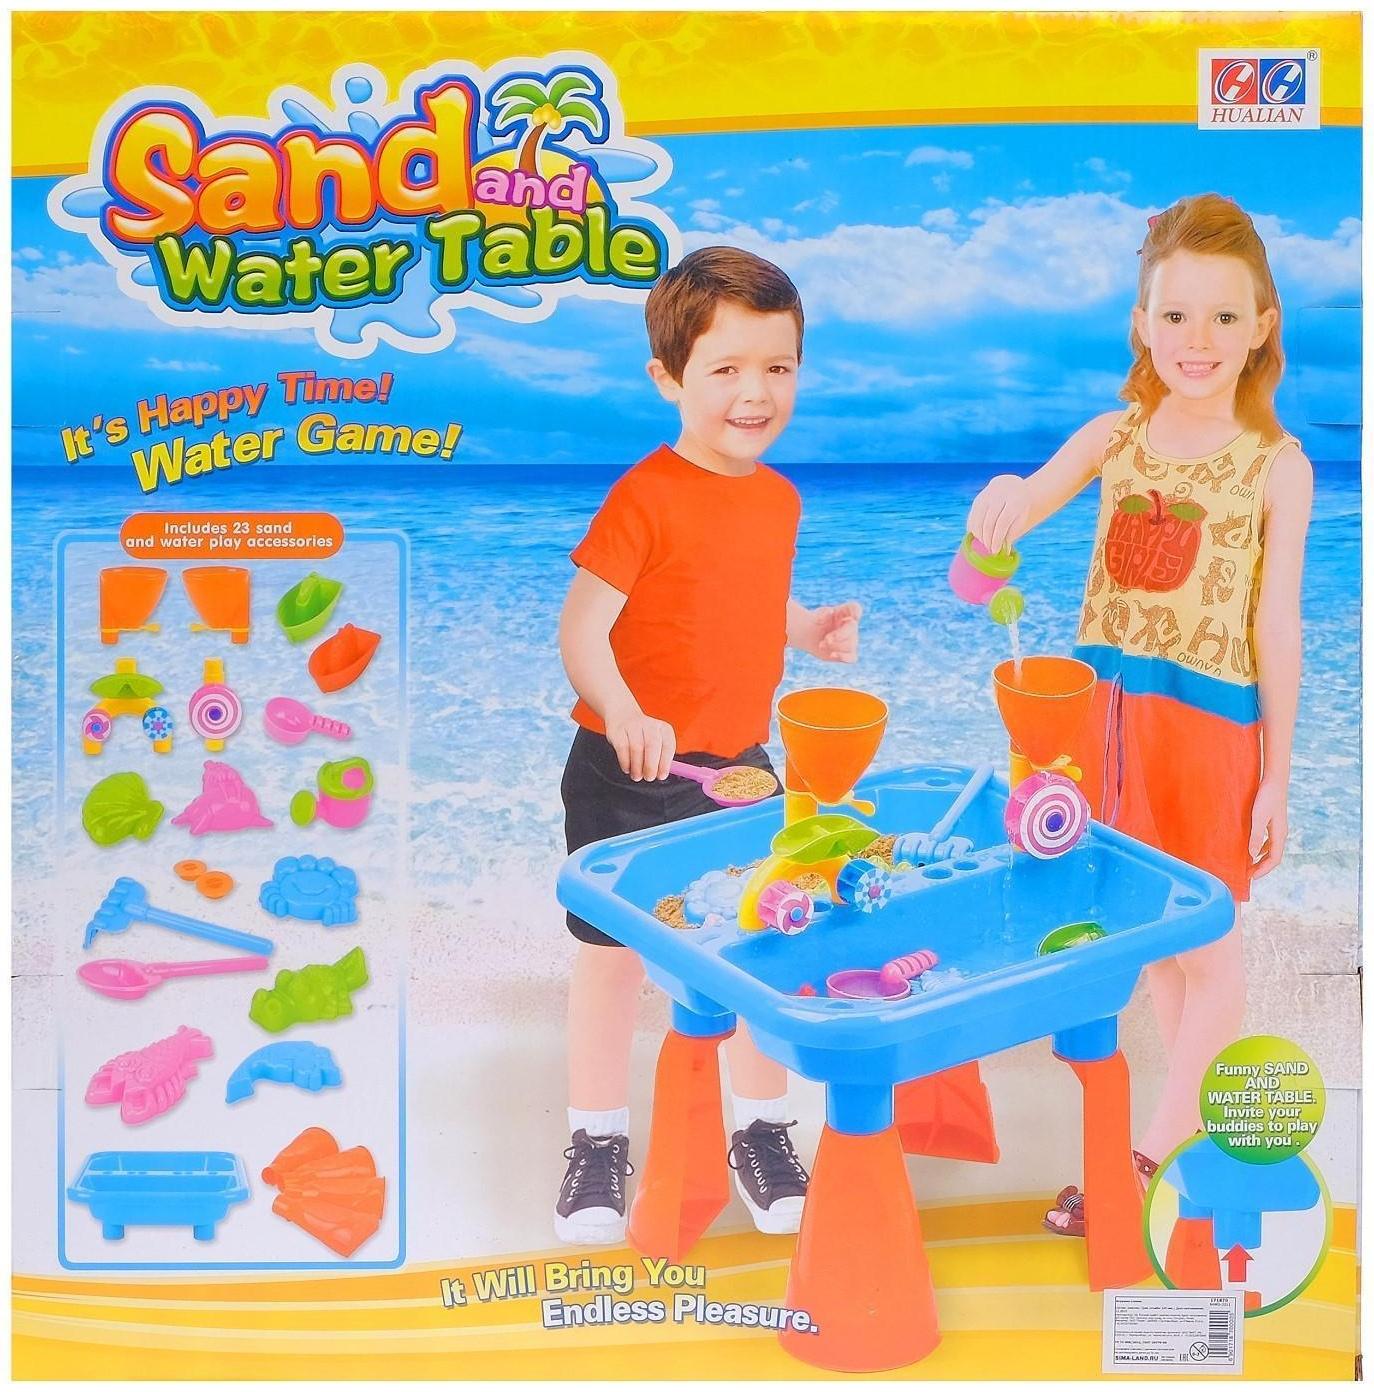 Игровой столик с песочным набором, 2 в 1, 18 предметов, высота 35,5 см